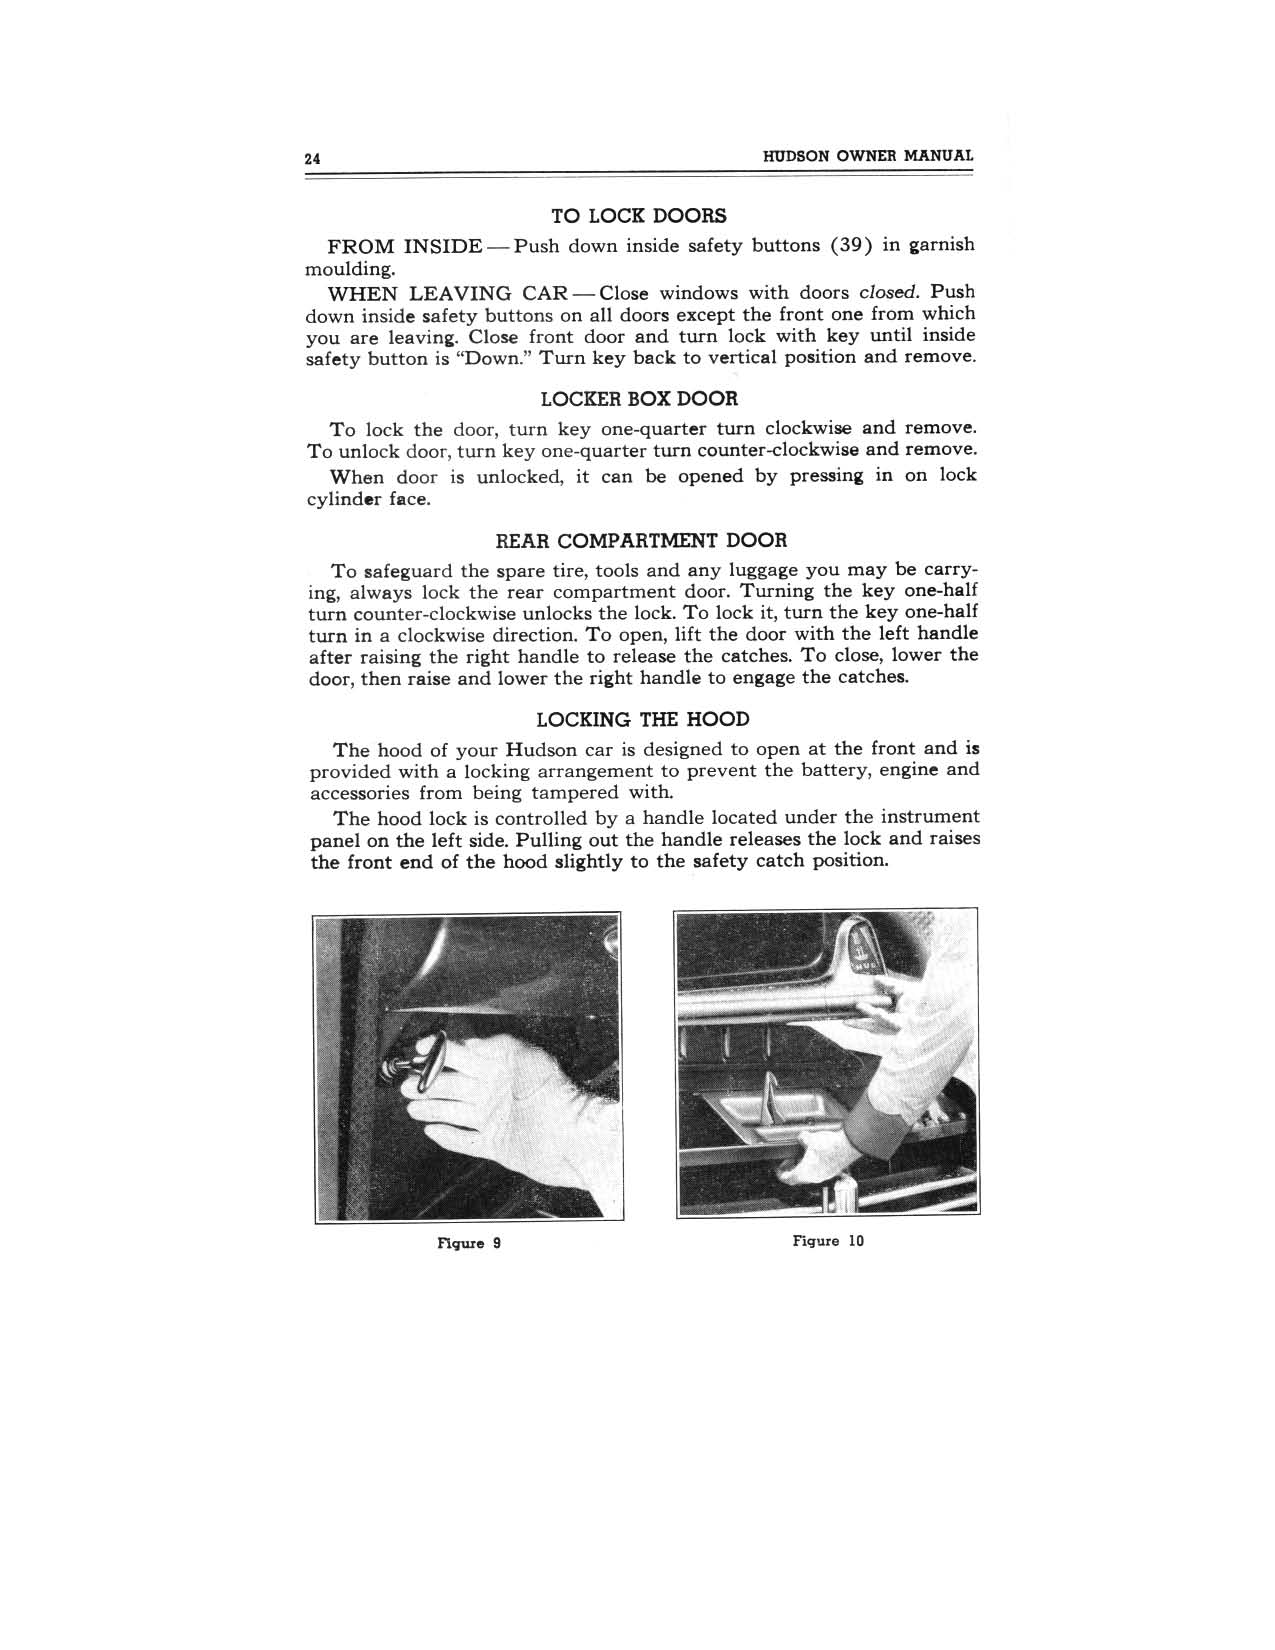 1949 Hudson Owners Manual-26